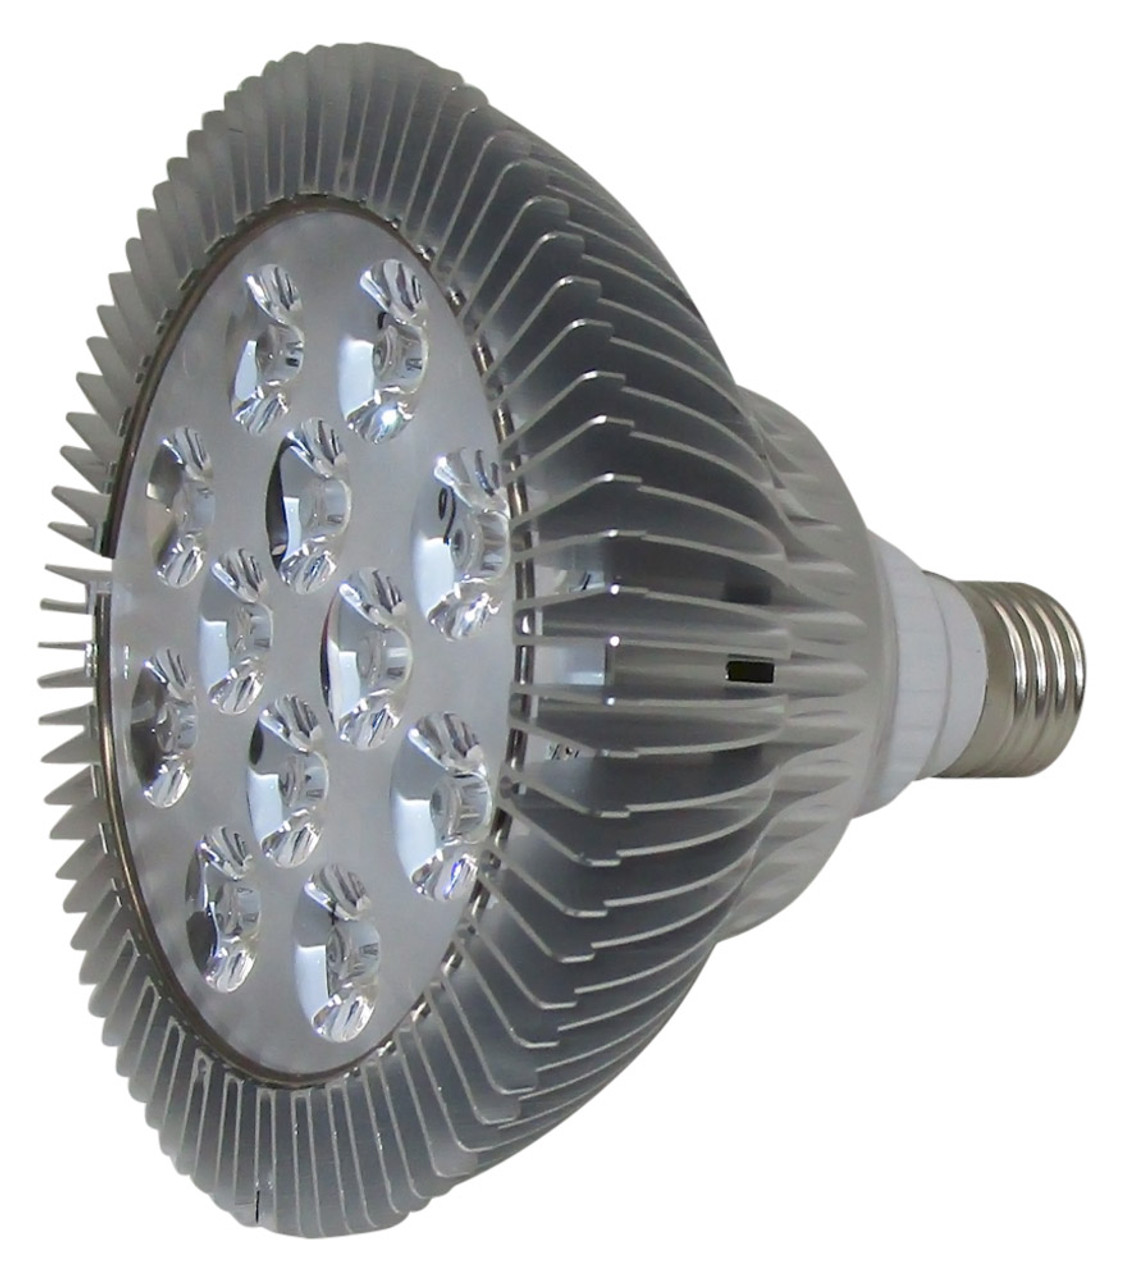 twintig Shipley Het beste BBB12W-395 twlve UV LED lamp emitting 395 NM light